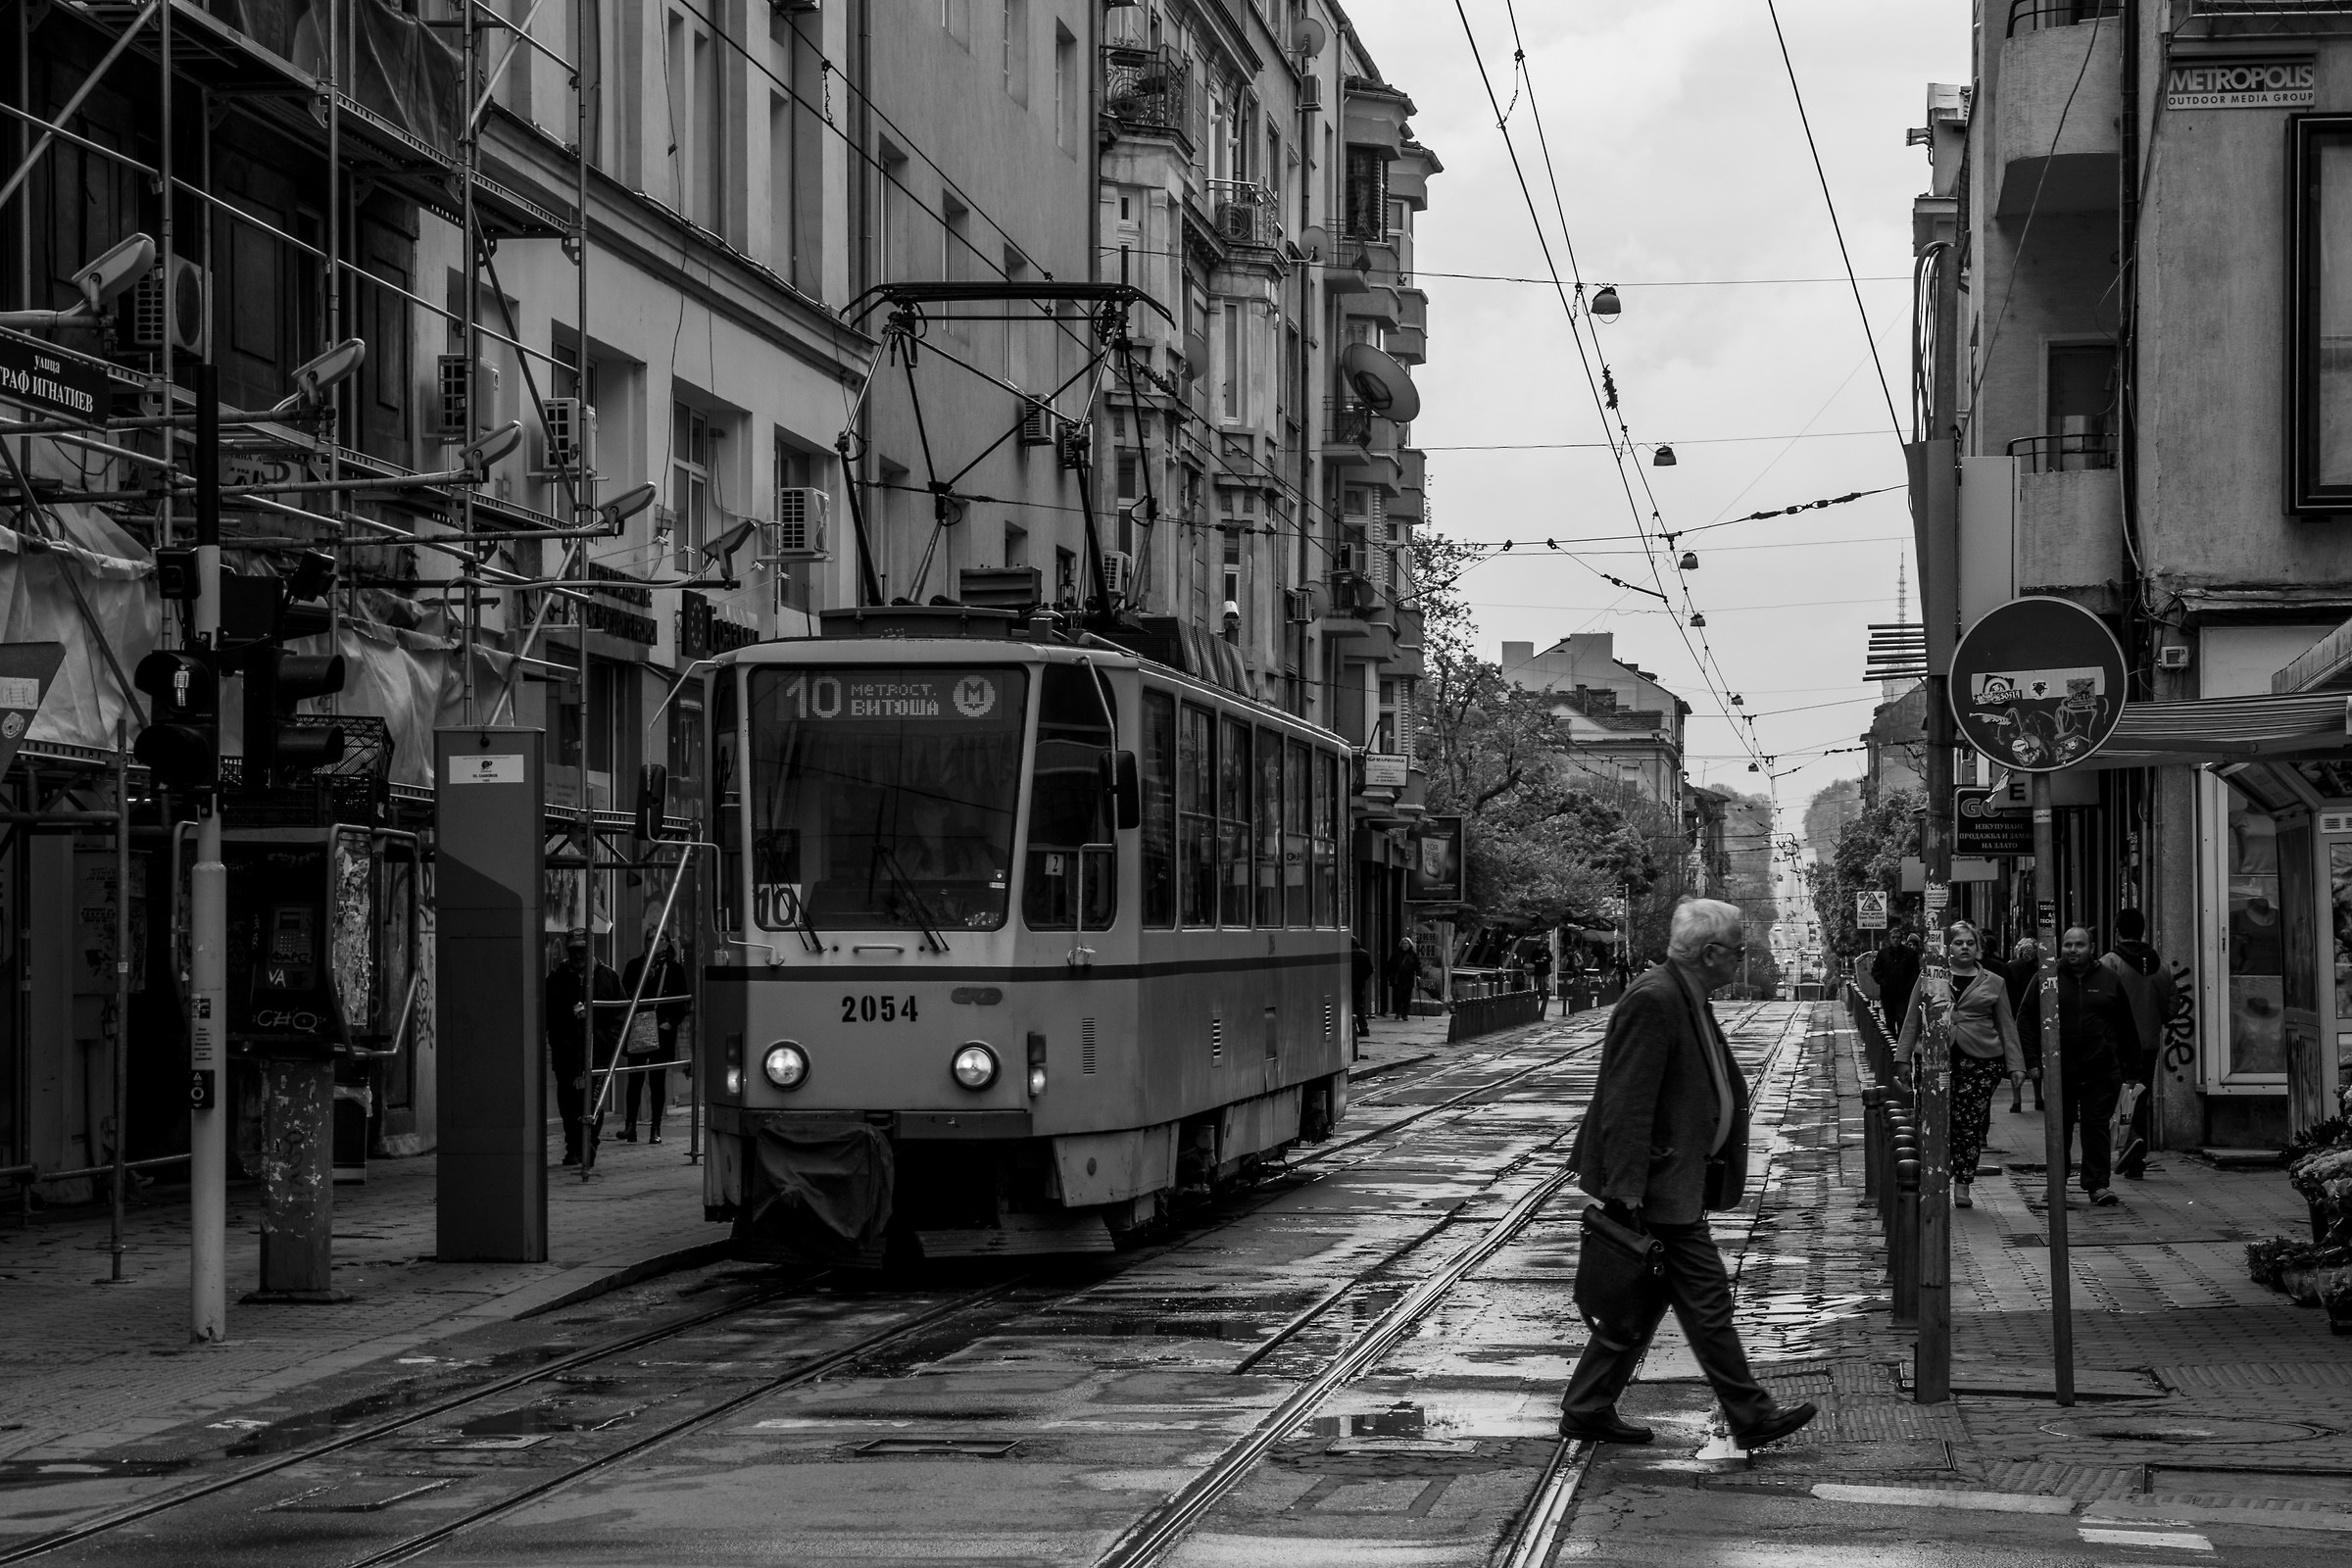 Sofia's tram...